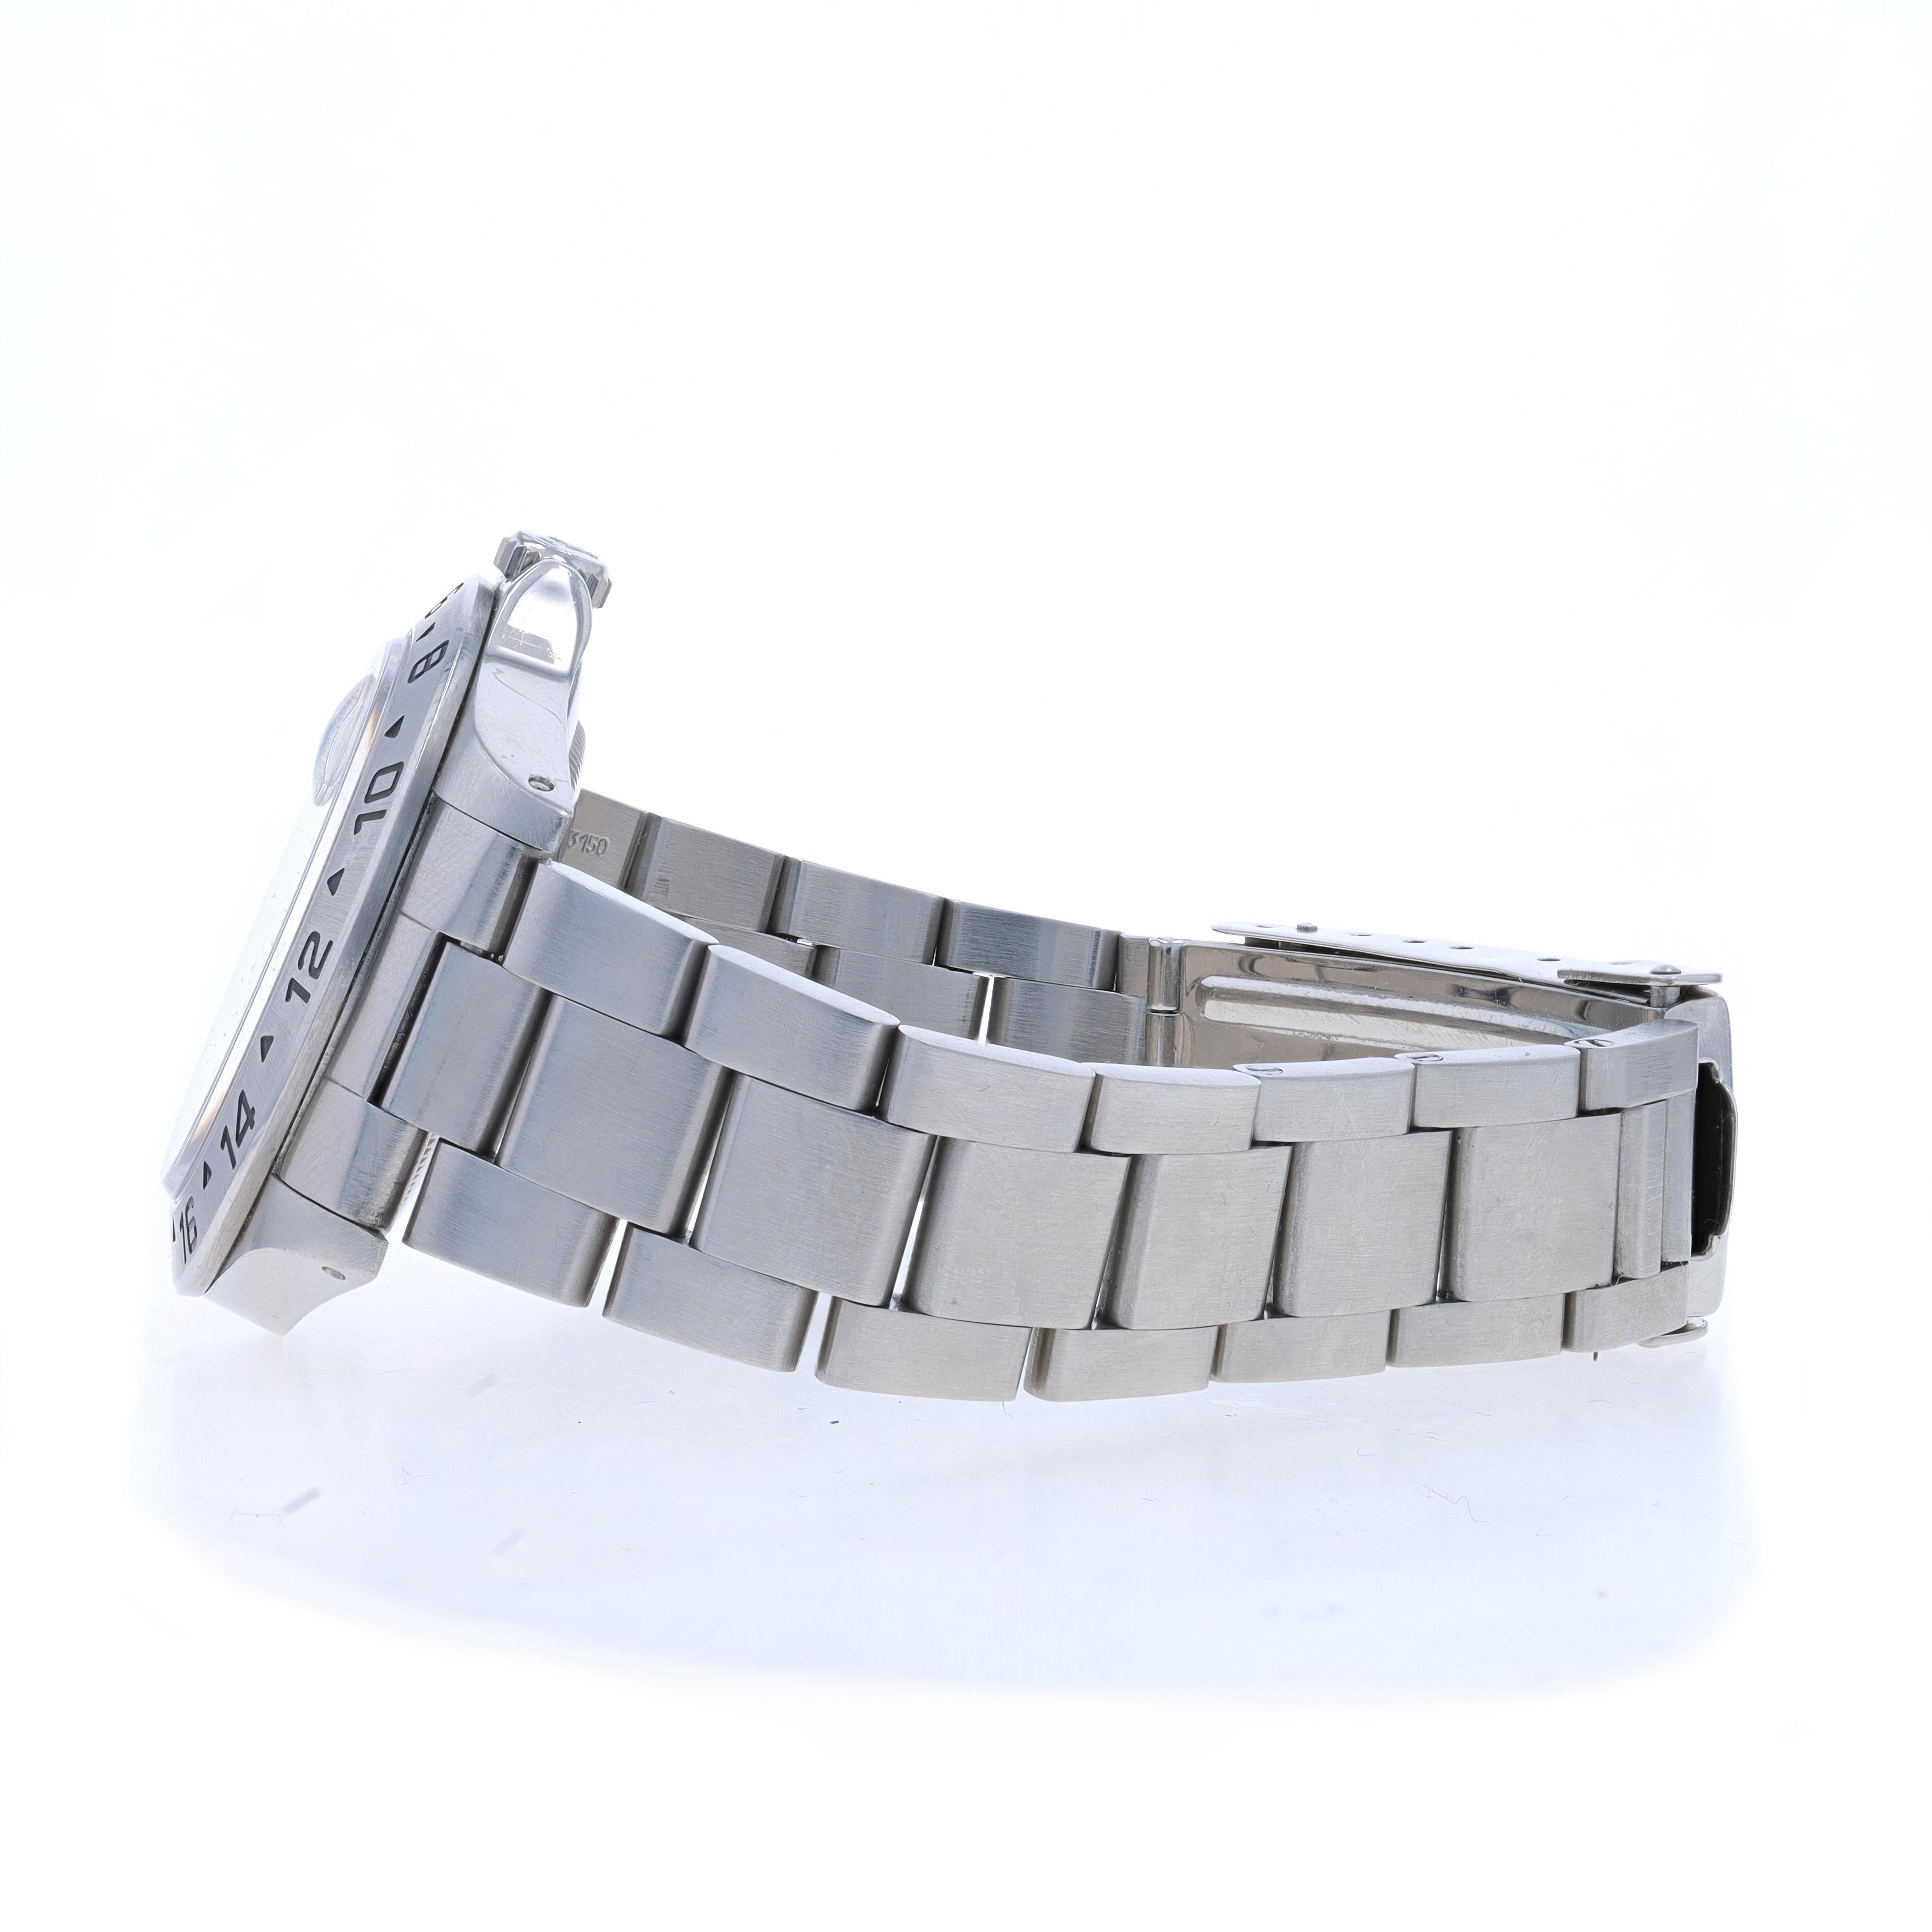  Rolex Explorer II Montre-bracelet pour hommes 16570 Acier inoxydable Automatique 1 an d'ancienneté Pour hommes 